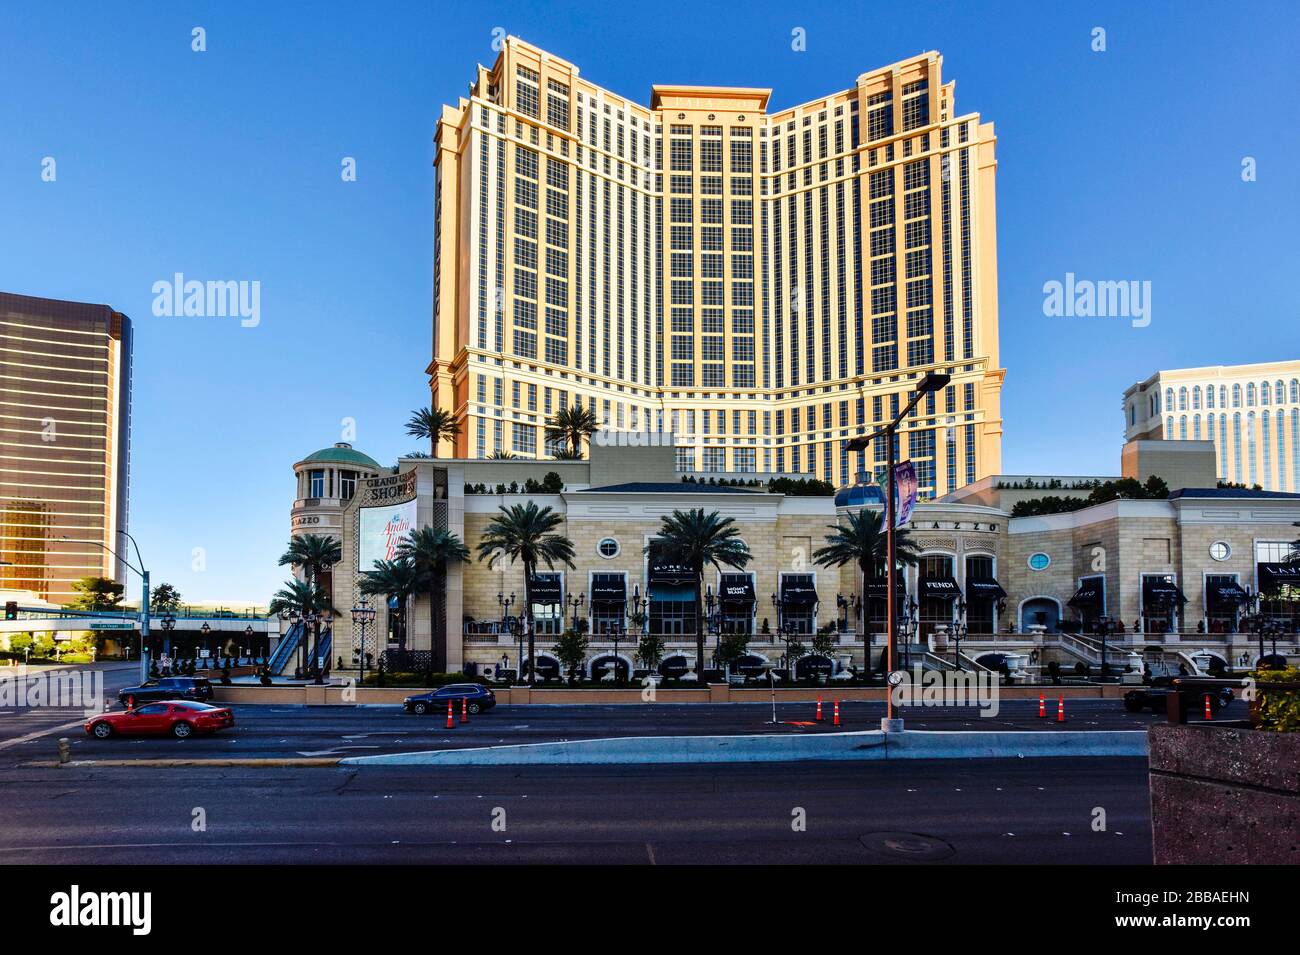 Une semaine dans la fermeture de Las Vegas en raison de Coronavirus, le Strip est assez vide. Pas de gens dans la rue et tout est fermé. Banque D'Images